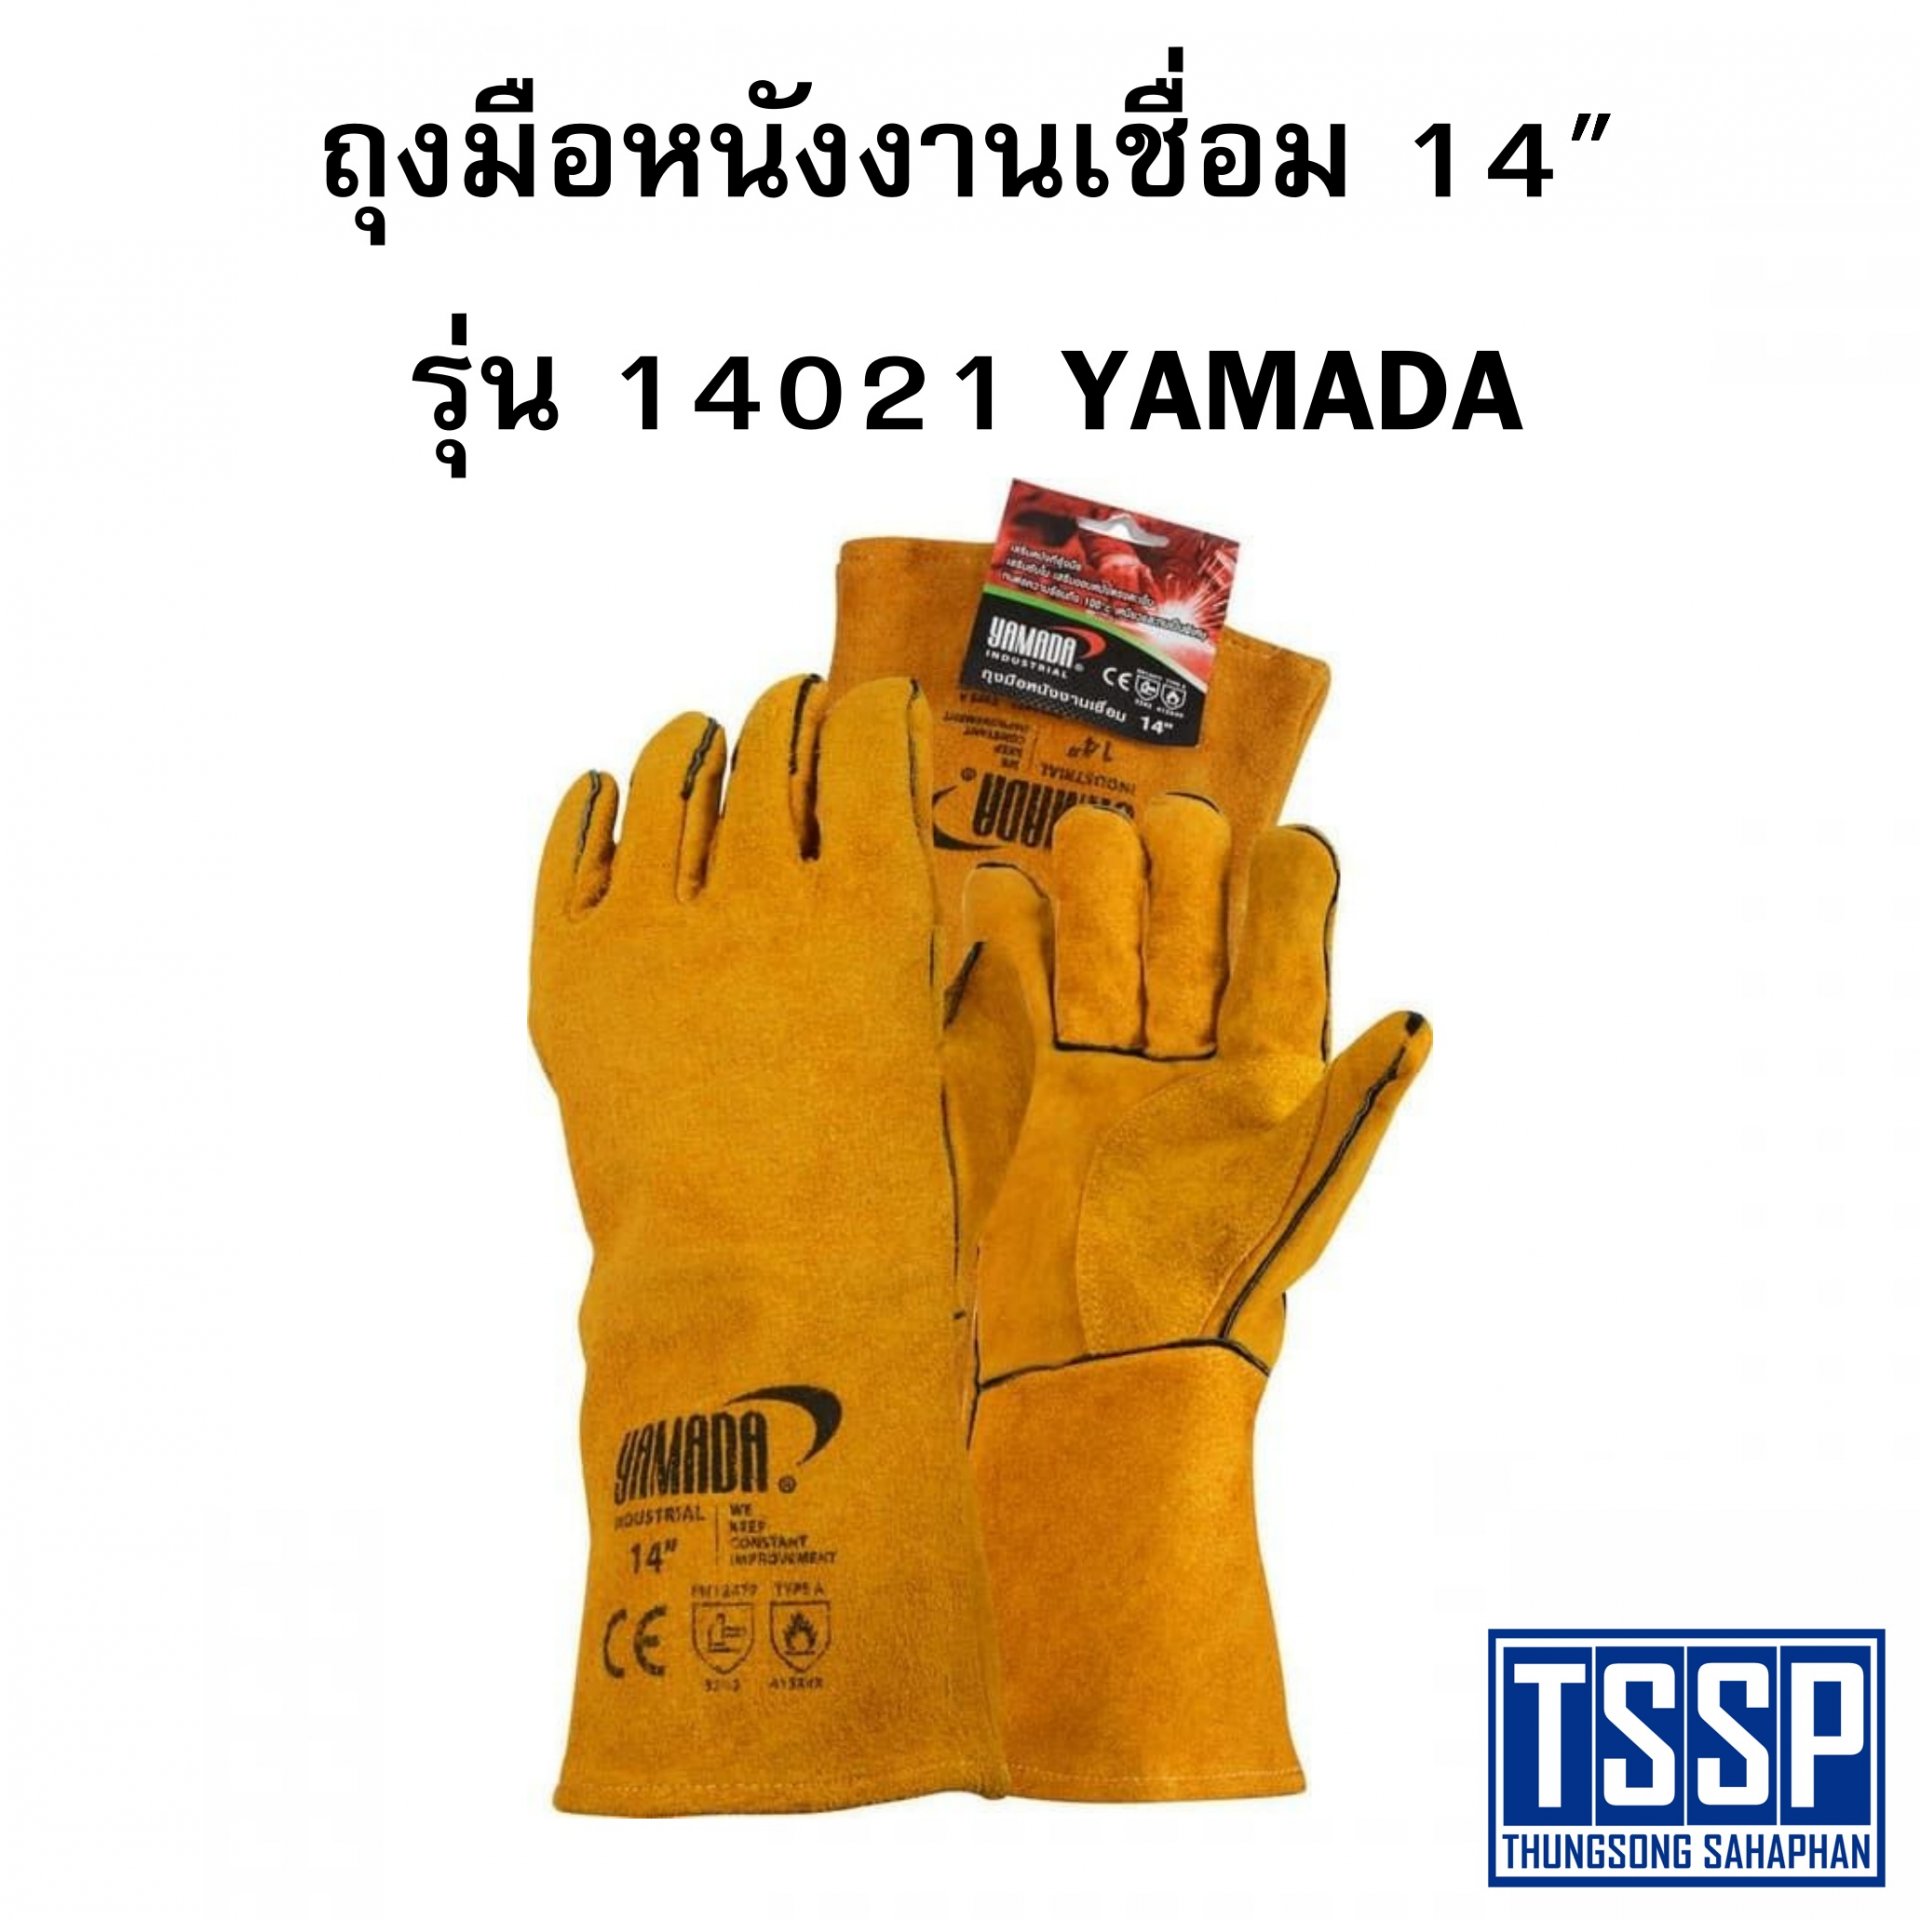 ถุงมือหนังงานเชื่อม 14" รุ่น 14021 YAMADA